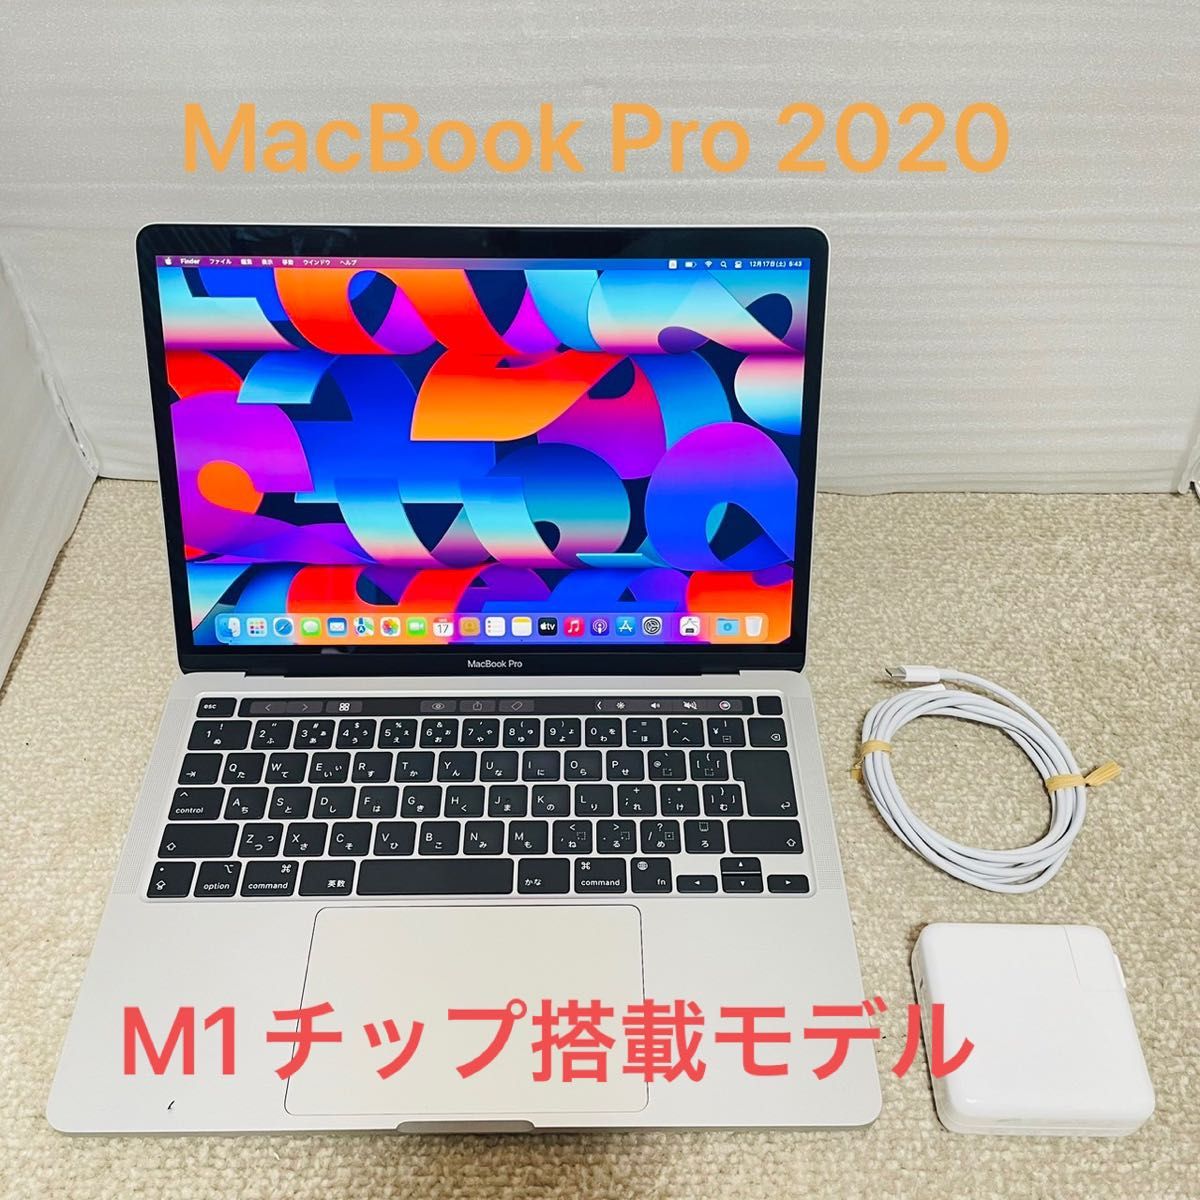 MacBook Pro 2020 M1チップ搭載 - fundacionatenea.org